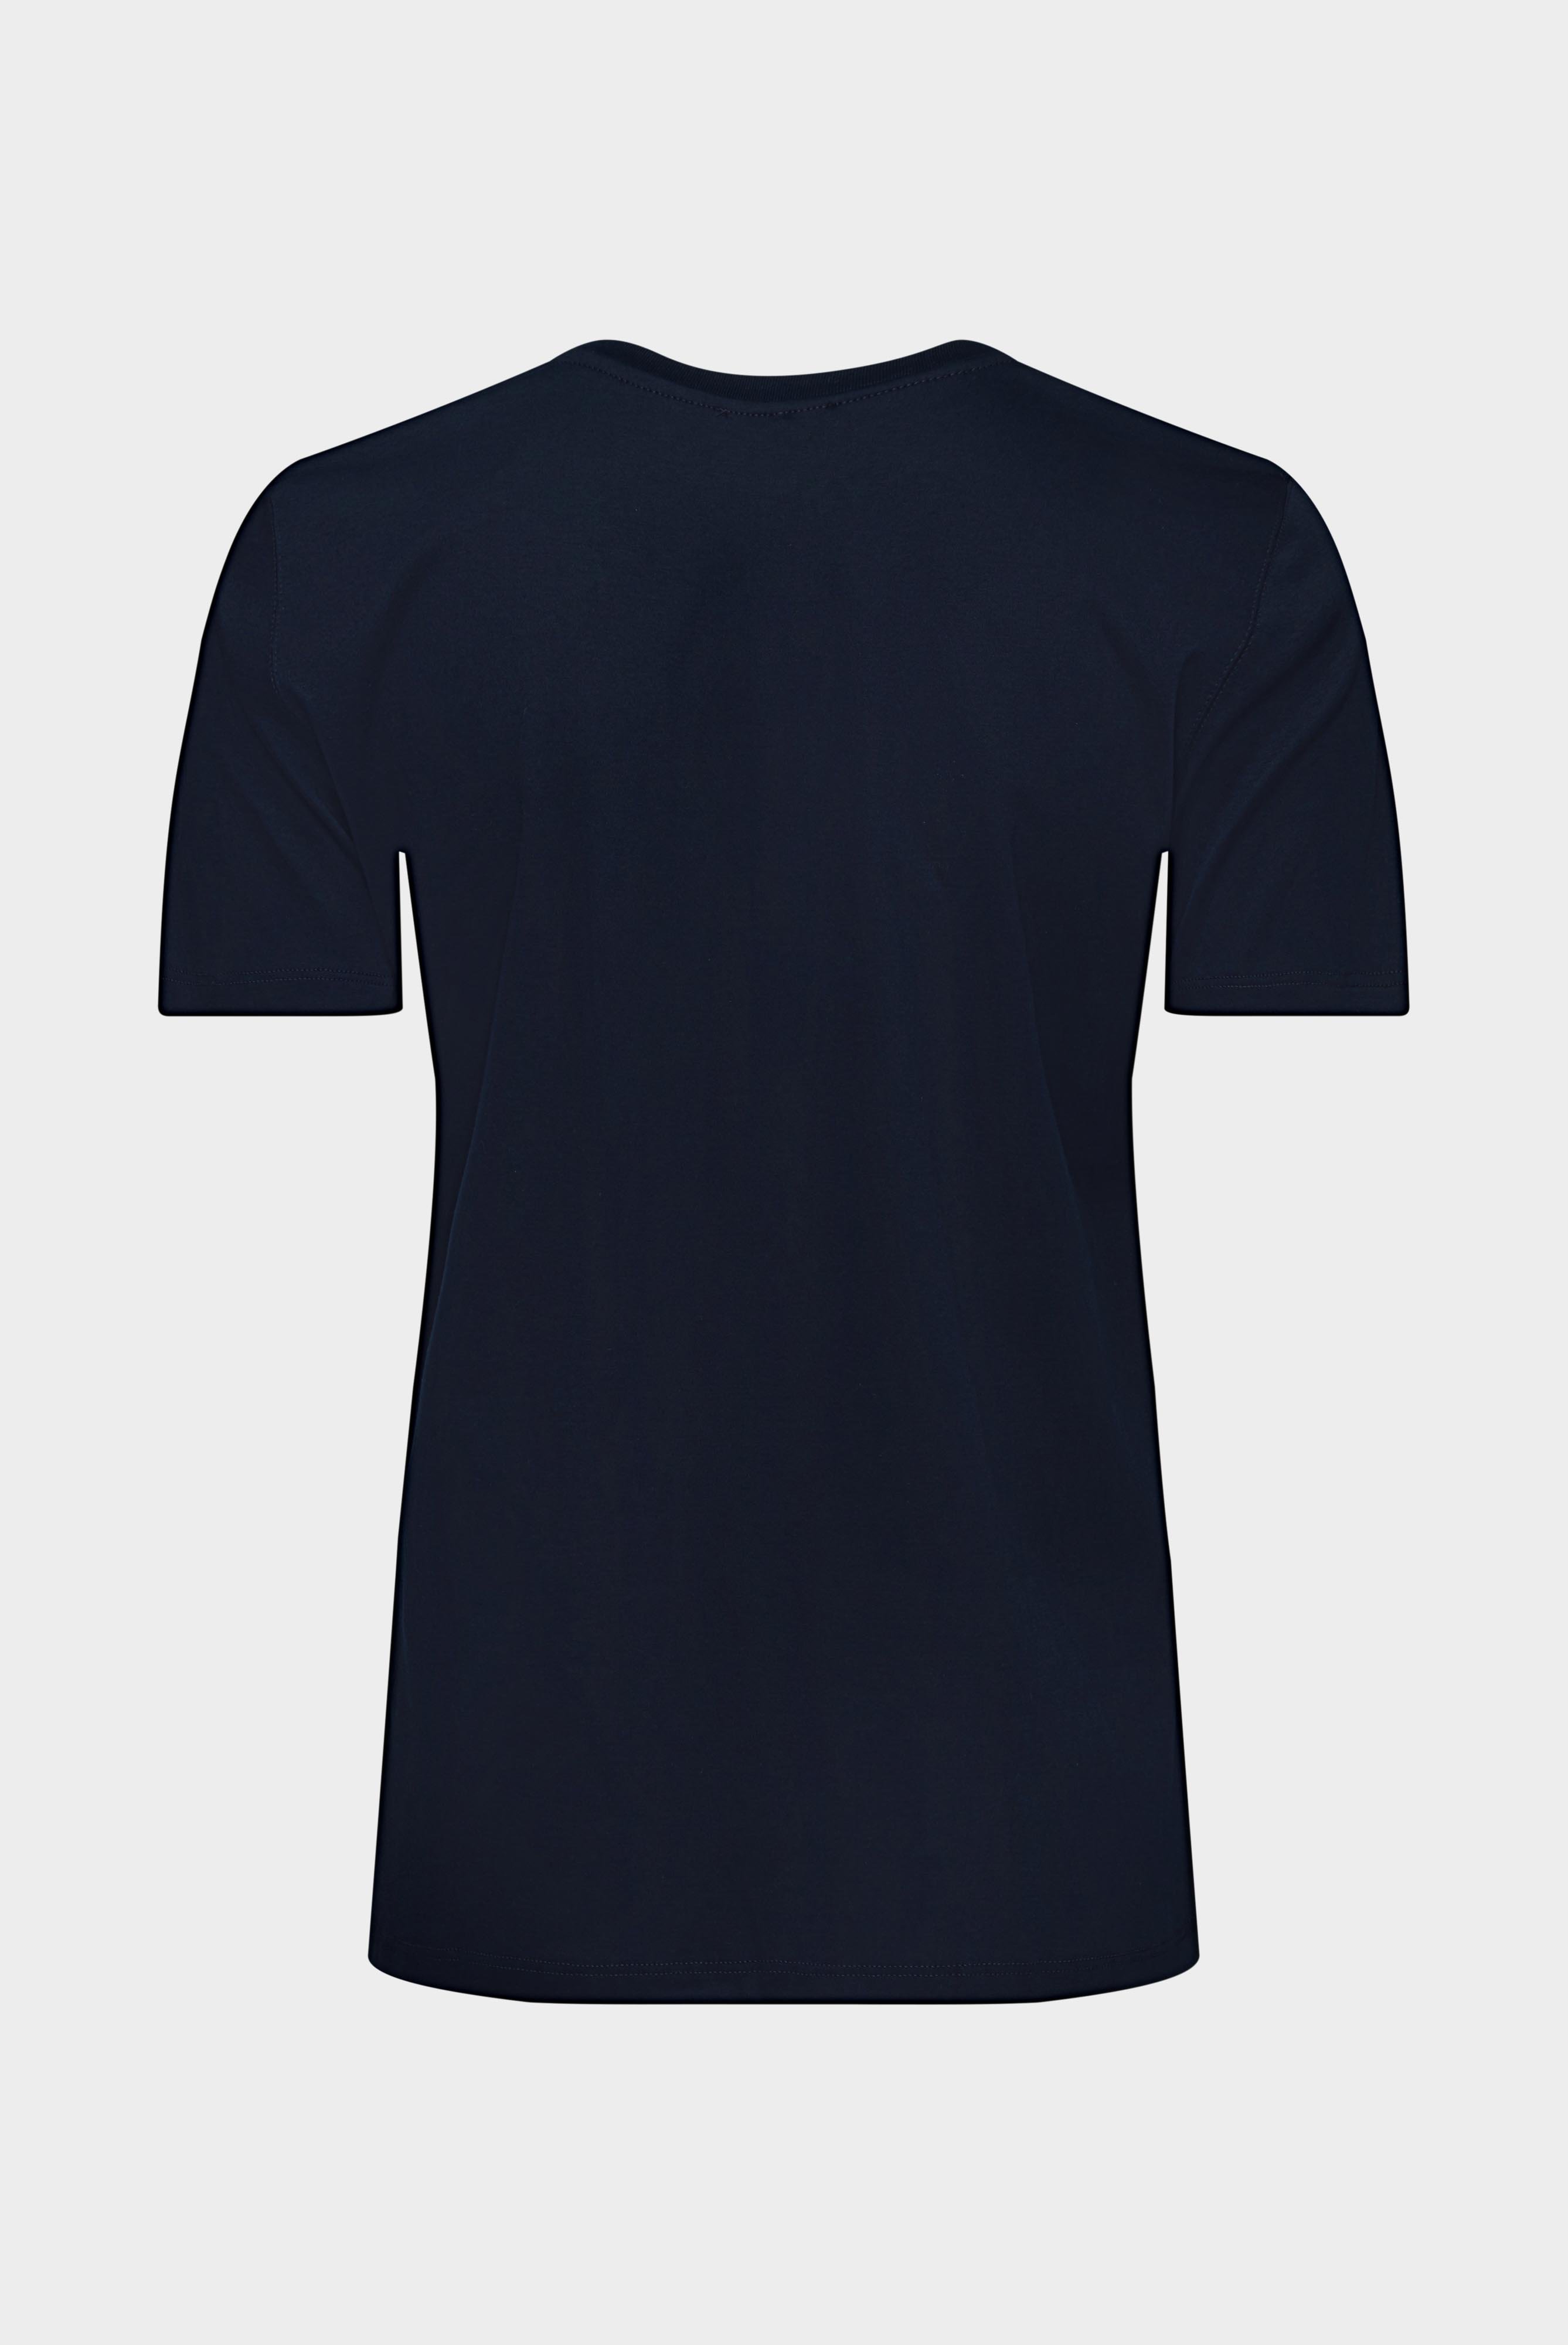 Tops & T-Shirts+Jersey T-Shirt+05.6384.18.180031.790.48